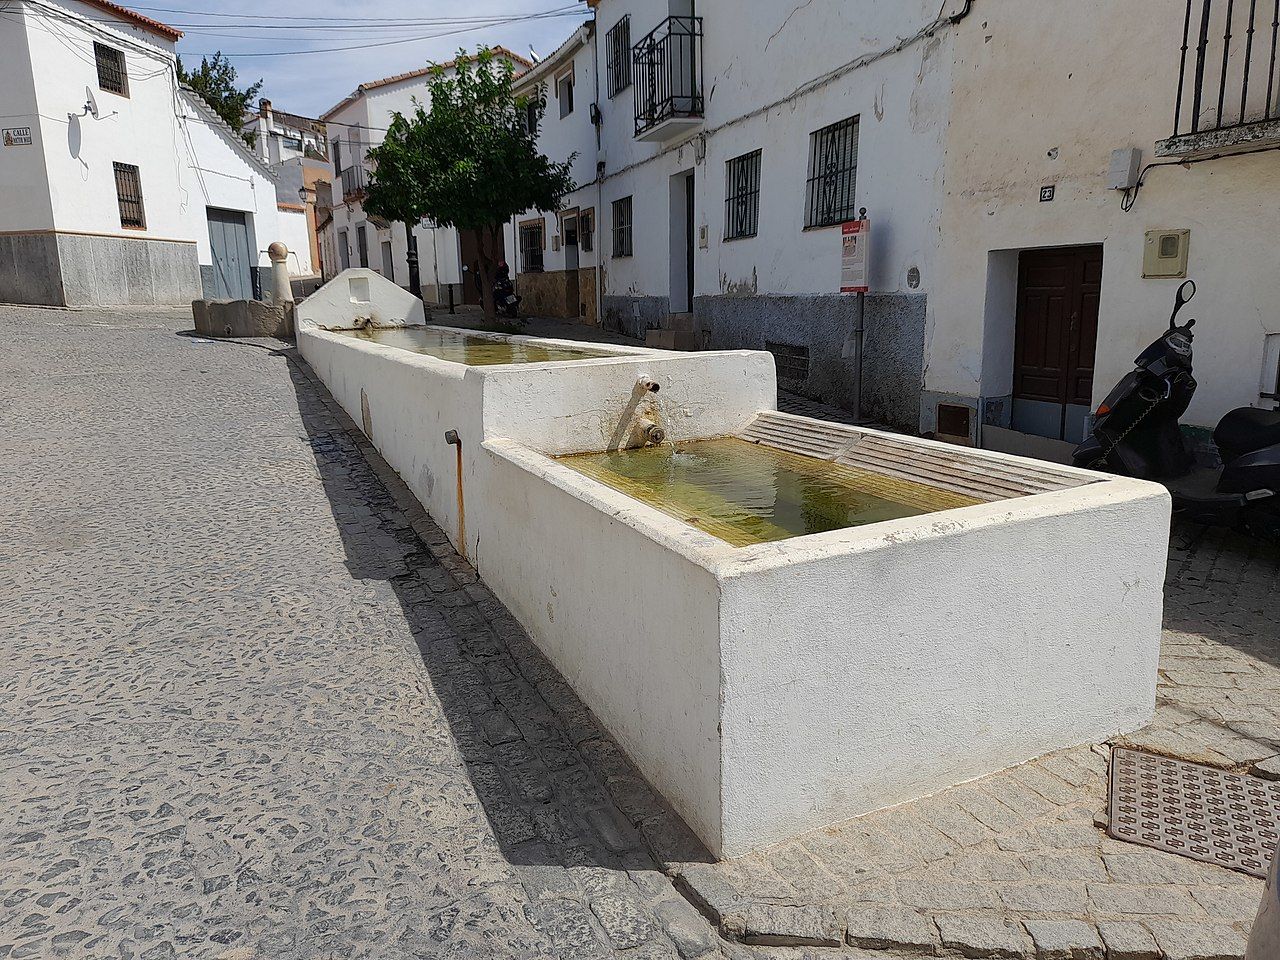 Descubre cómo puedes vivir gratis en este pueblo de Sevilla.